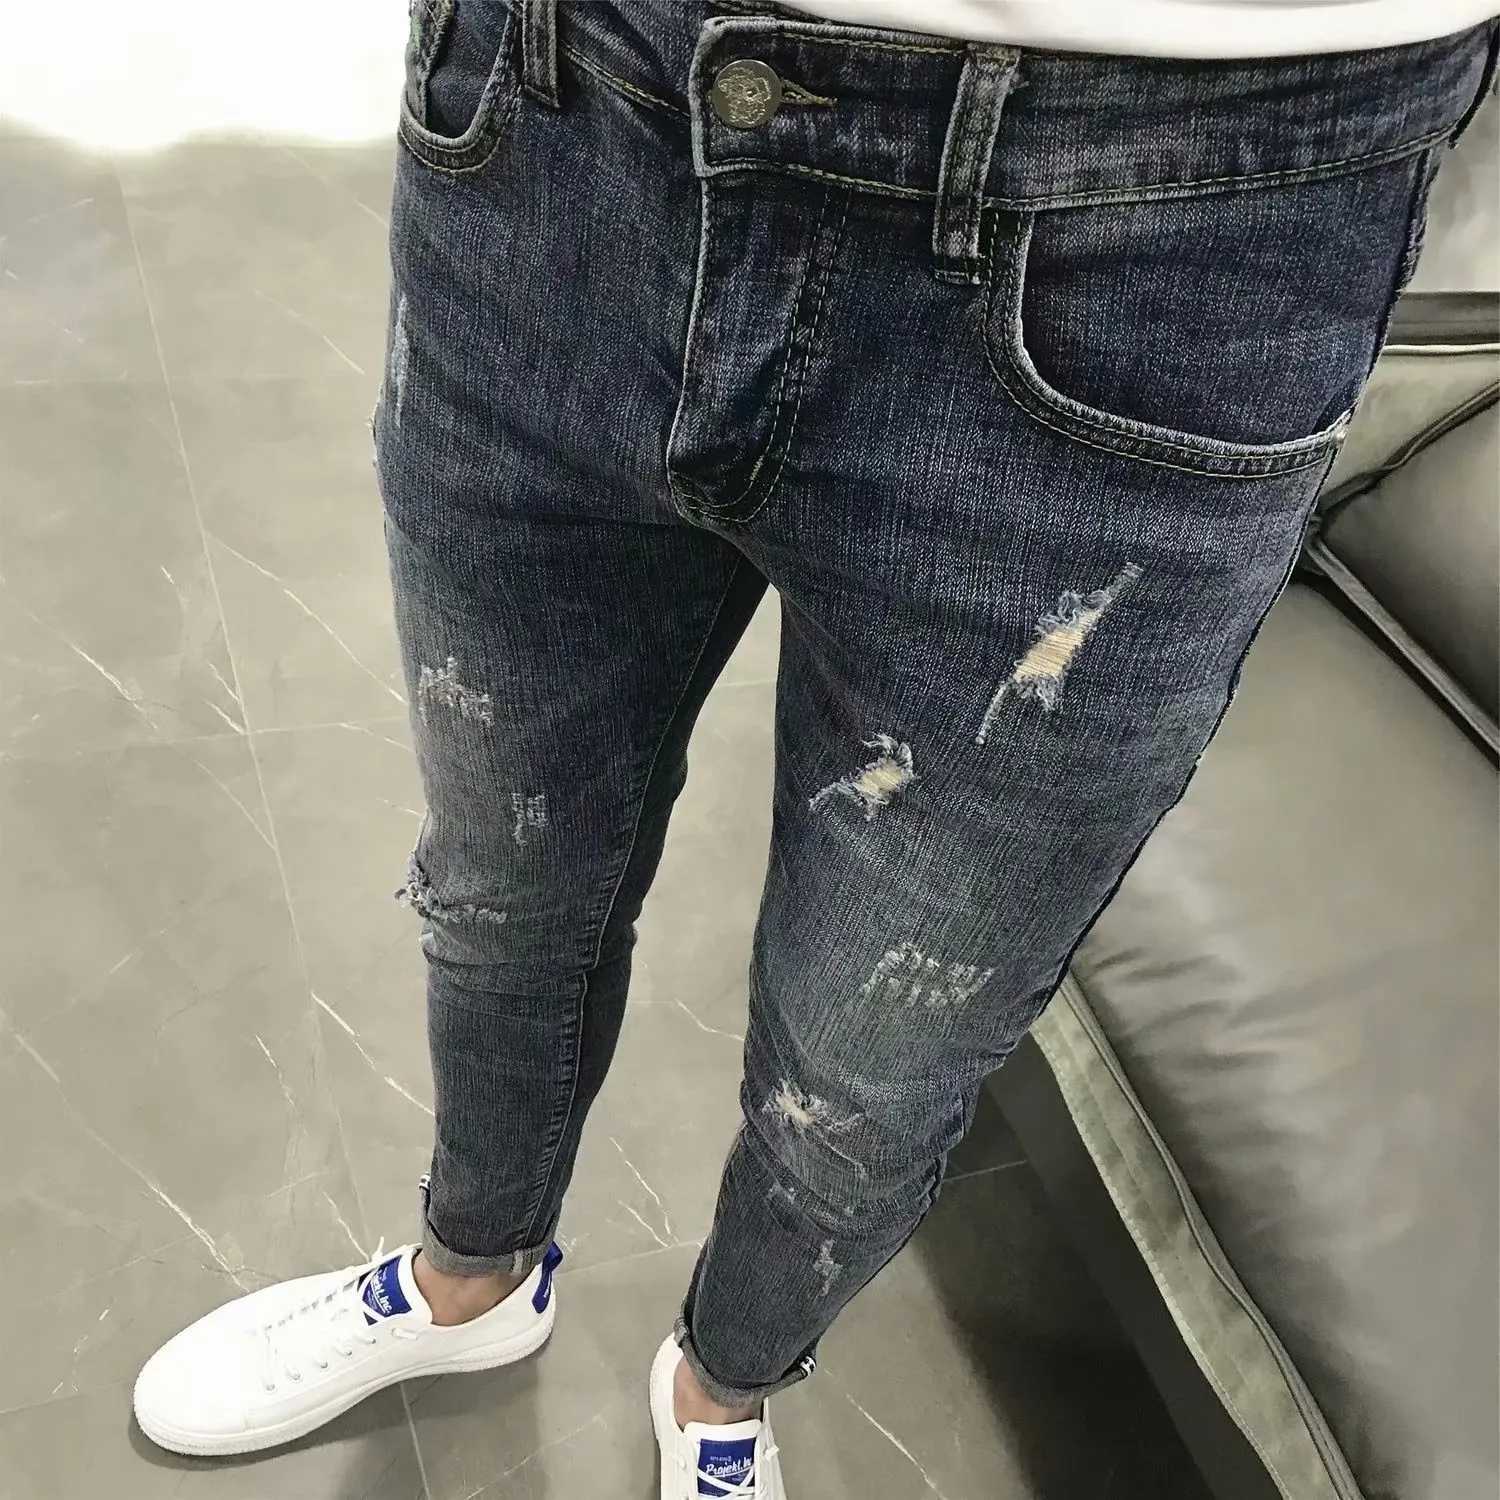 Neue 2021 Koreanische Mode Männer Beiläufige Dünne Mann Hosen Schule Jugend Kleine Füße Waschen Strumpfhosen Bleistift Hosen Denim Jeans